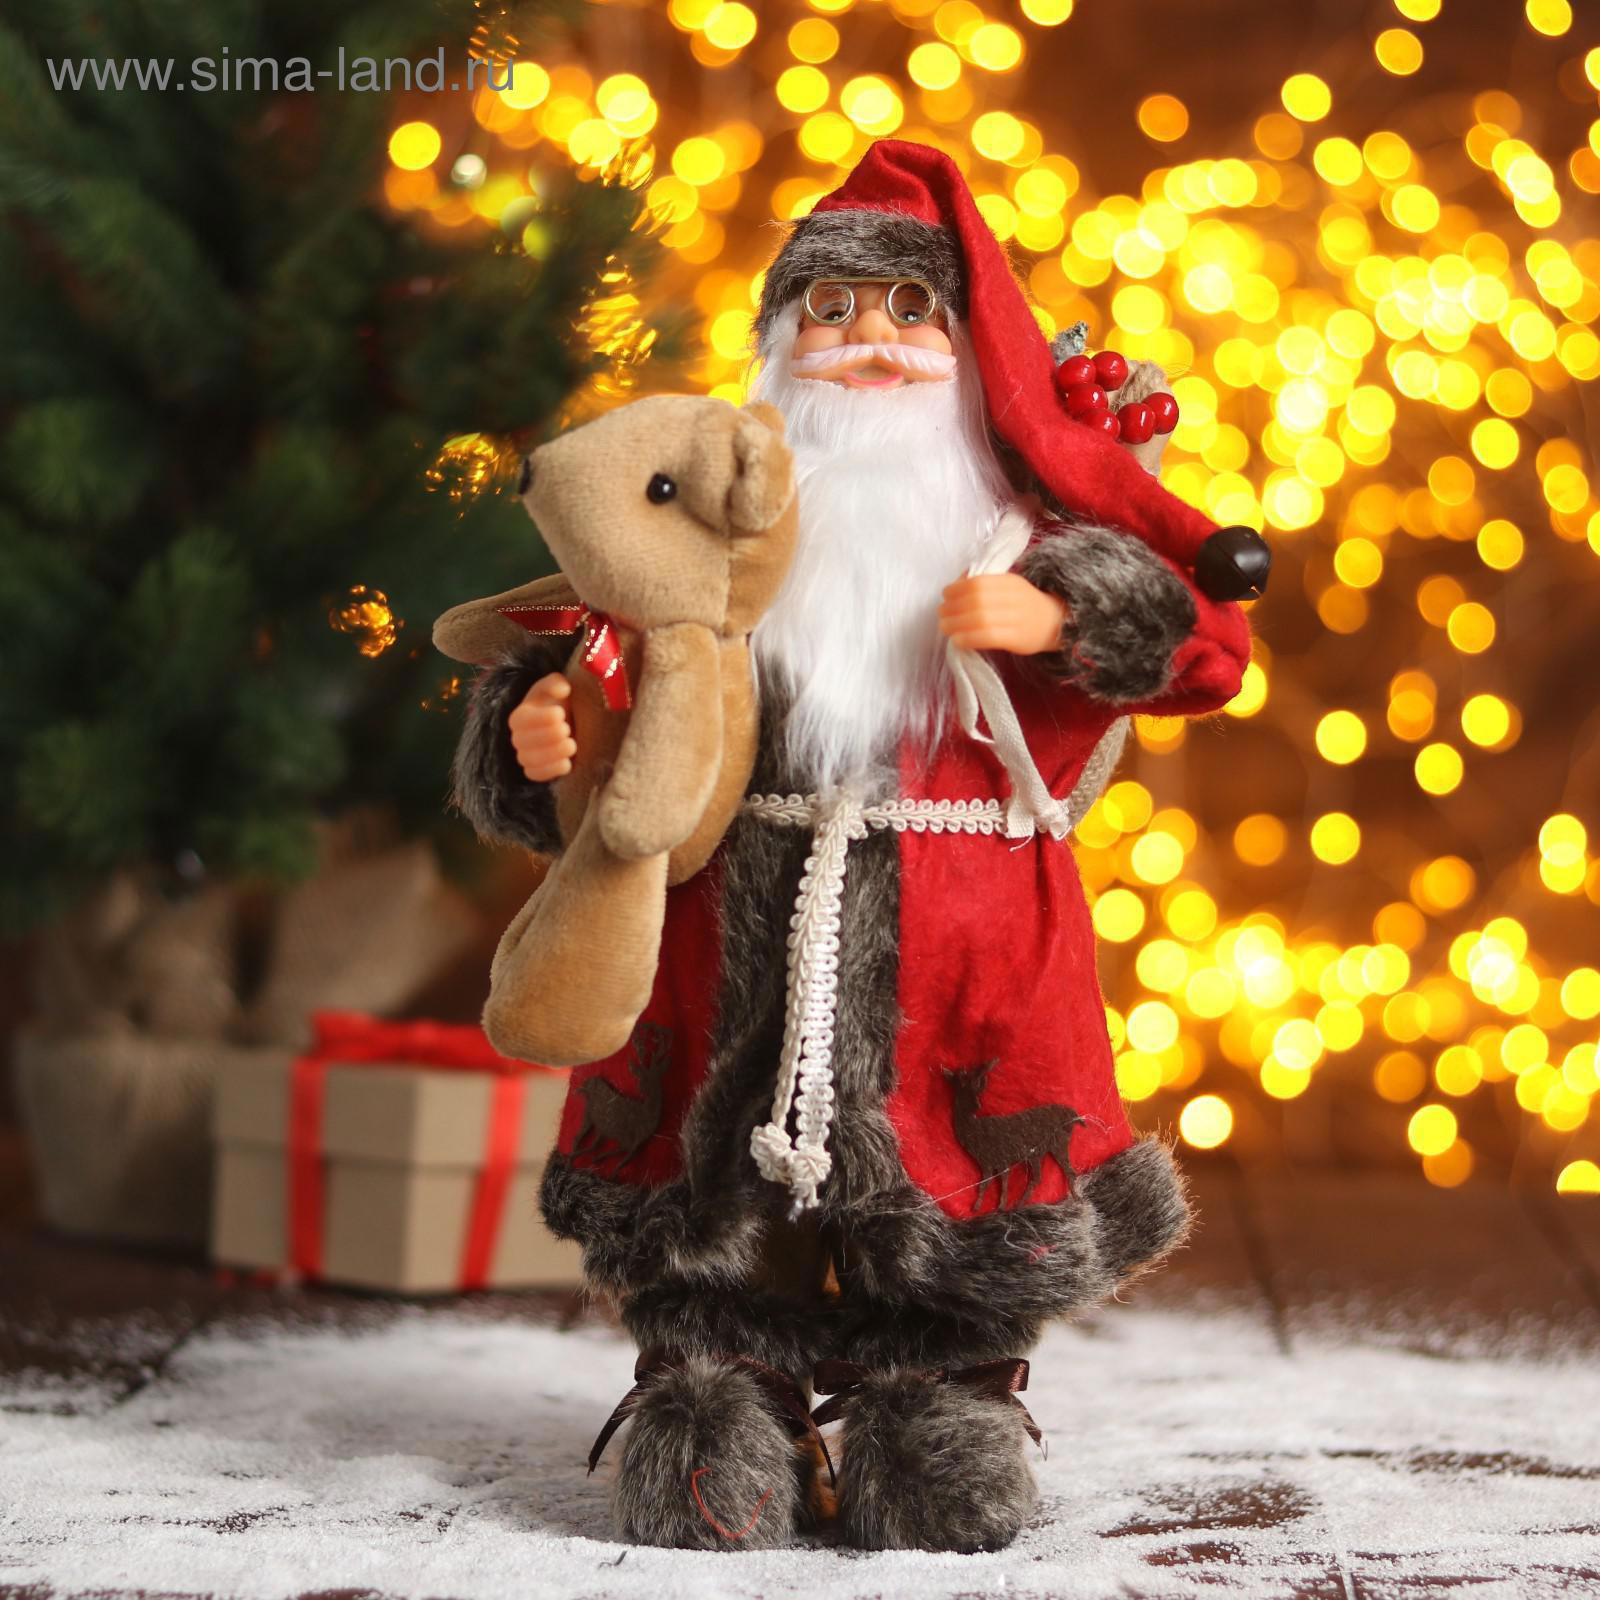 5036017. Дед Мороз и елка. Шуба Деда Мороза. Дед Мороз в красной шубе. Дед Мороз х.